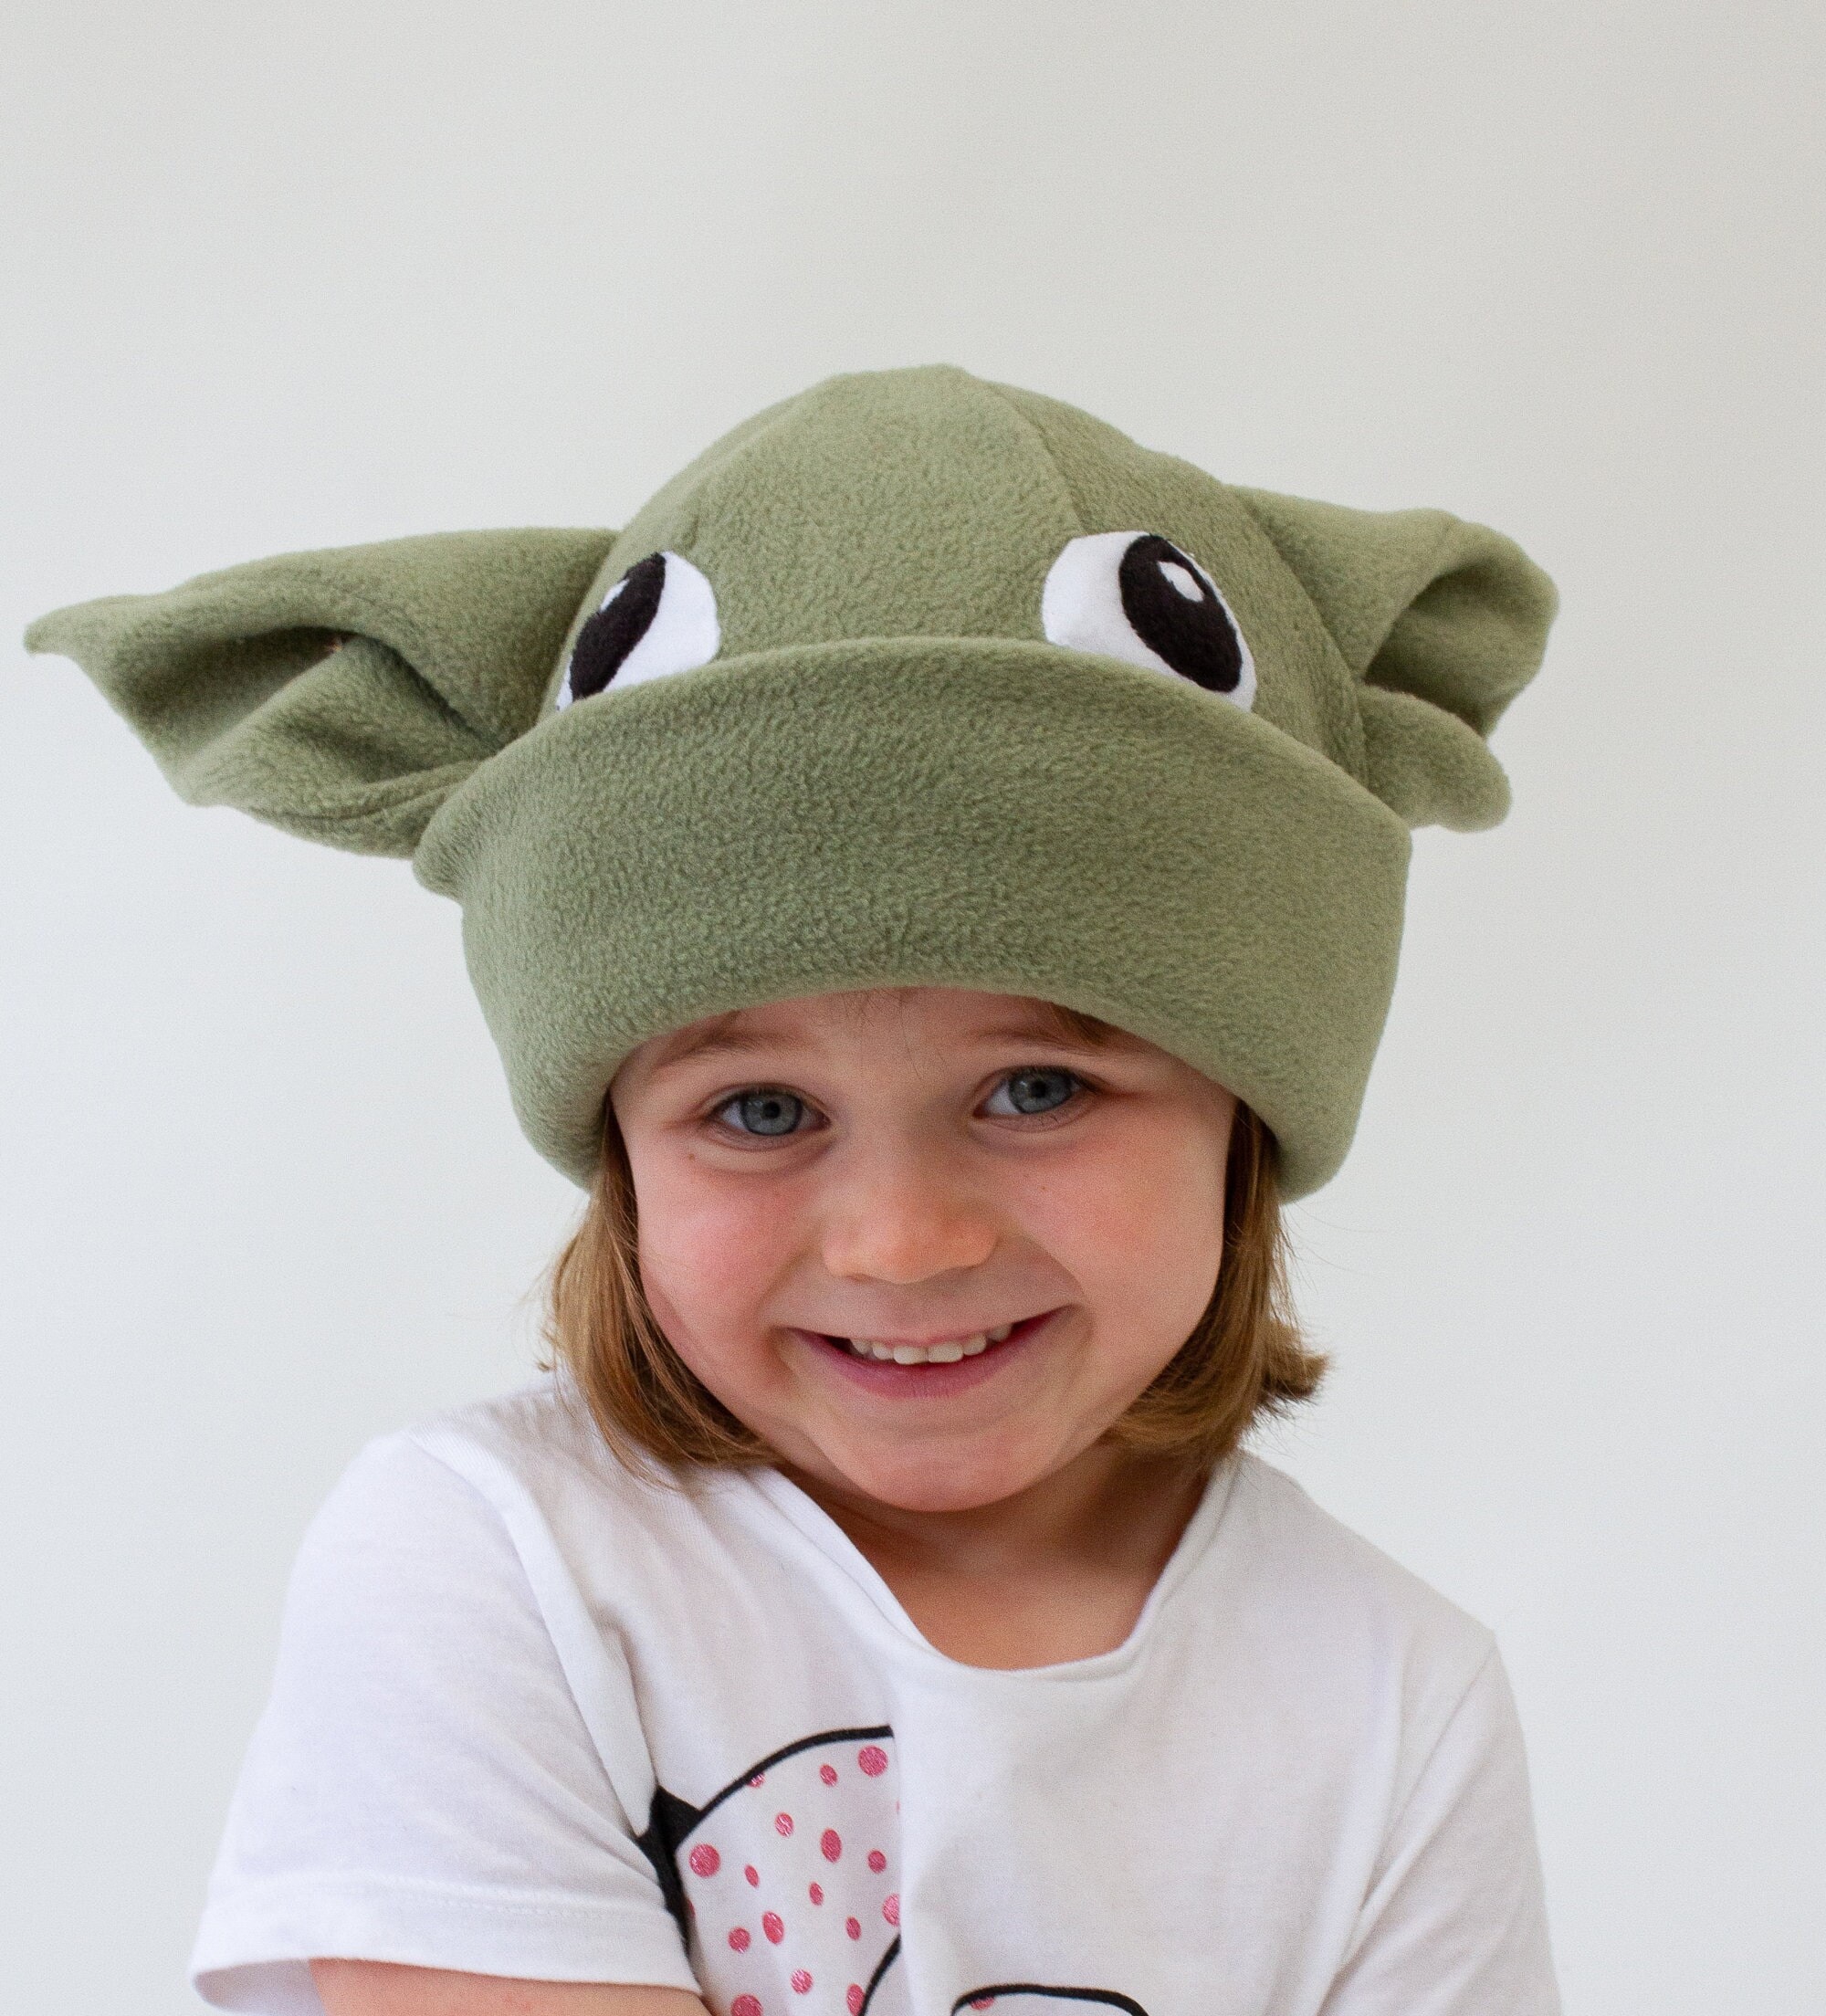 Disfraz de cosplay para bebé Yoda, vestido de fiesta para niños